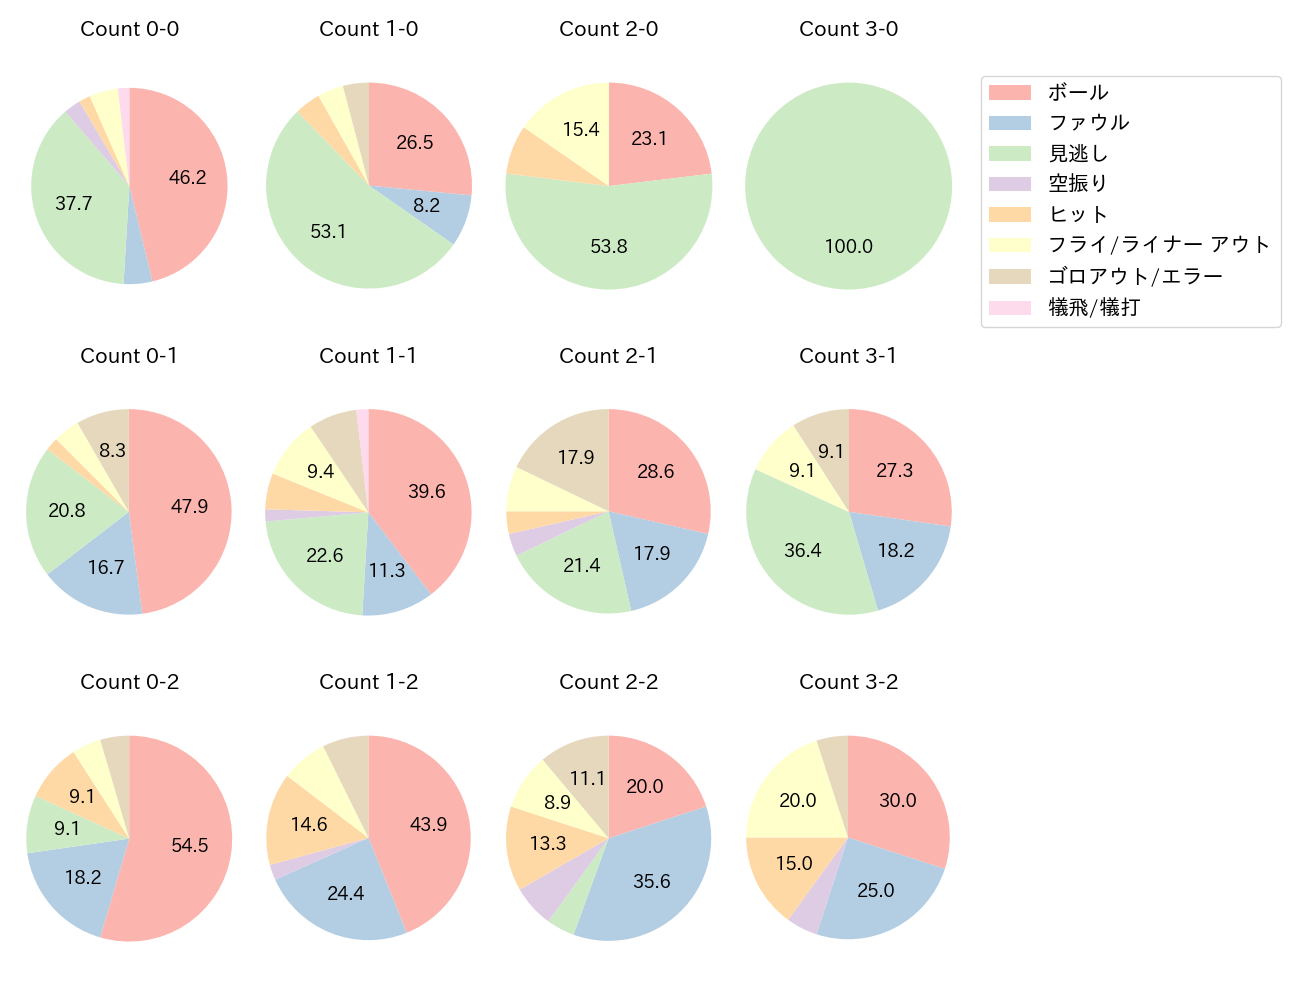 福田 周平の球数分布(2021年9月)